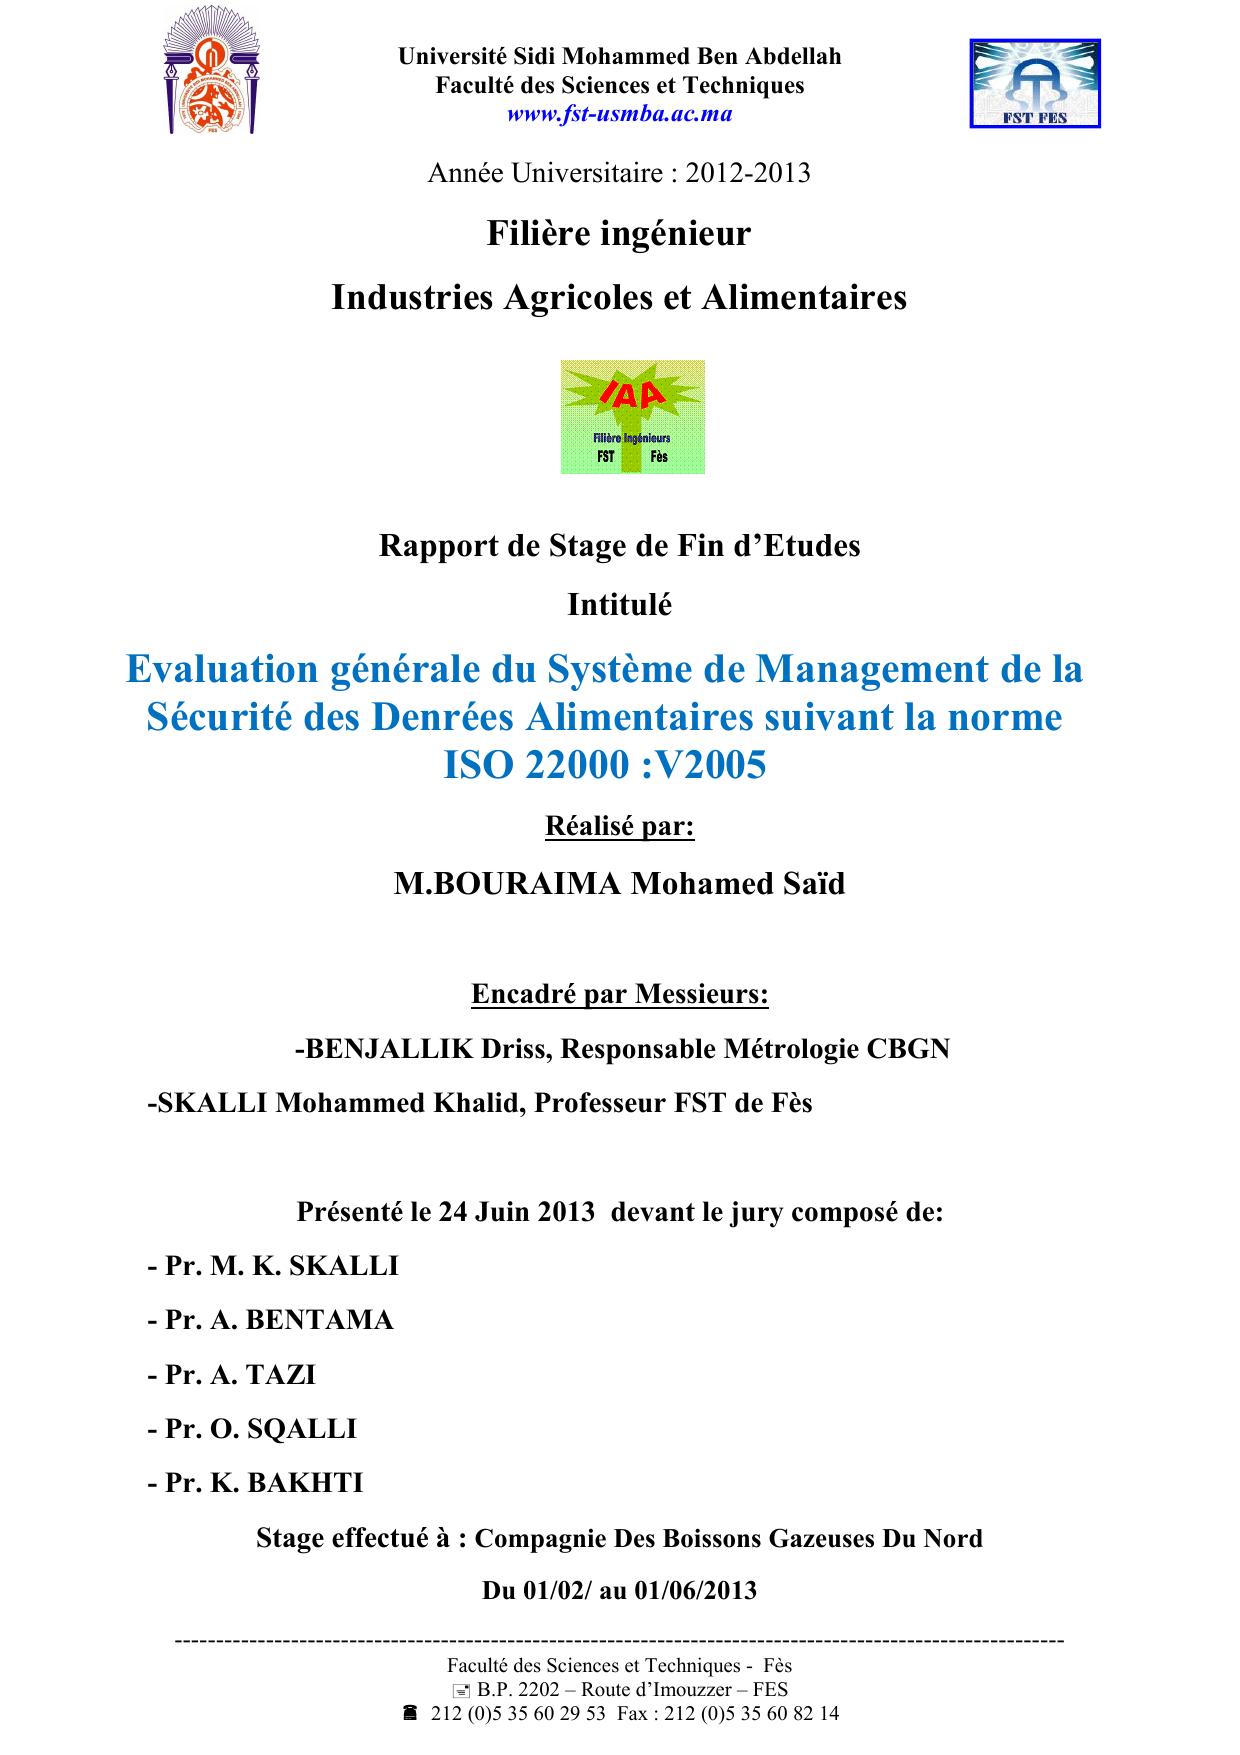 Evaluation générale du Système de Management de la Sécurité des Denrées Alimentaires suivant la norme ISO 22000 :V2005